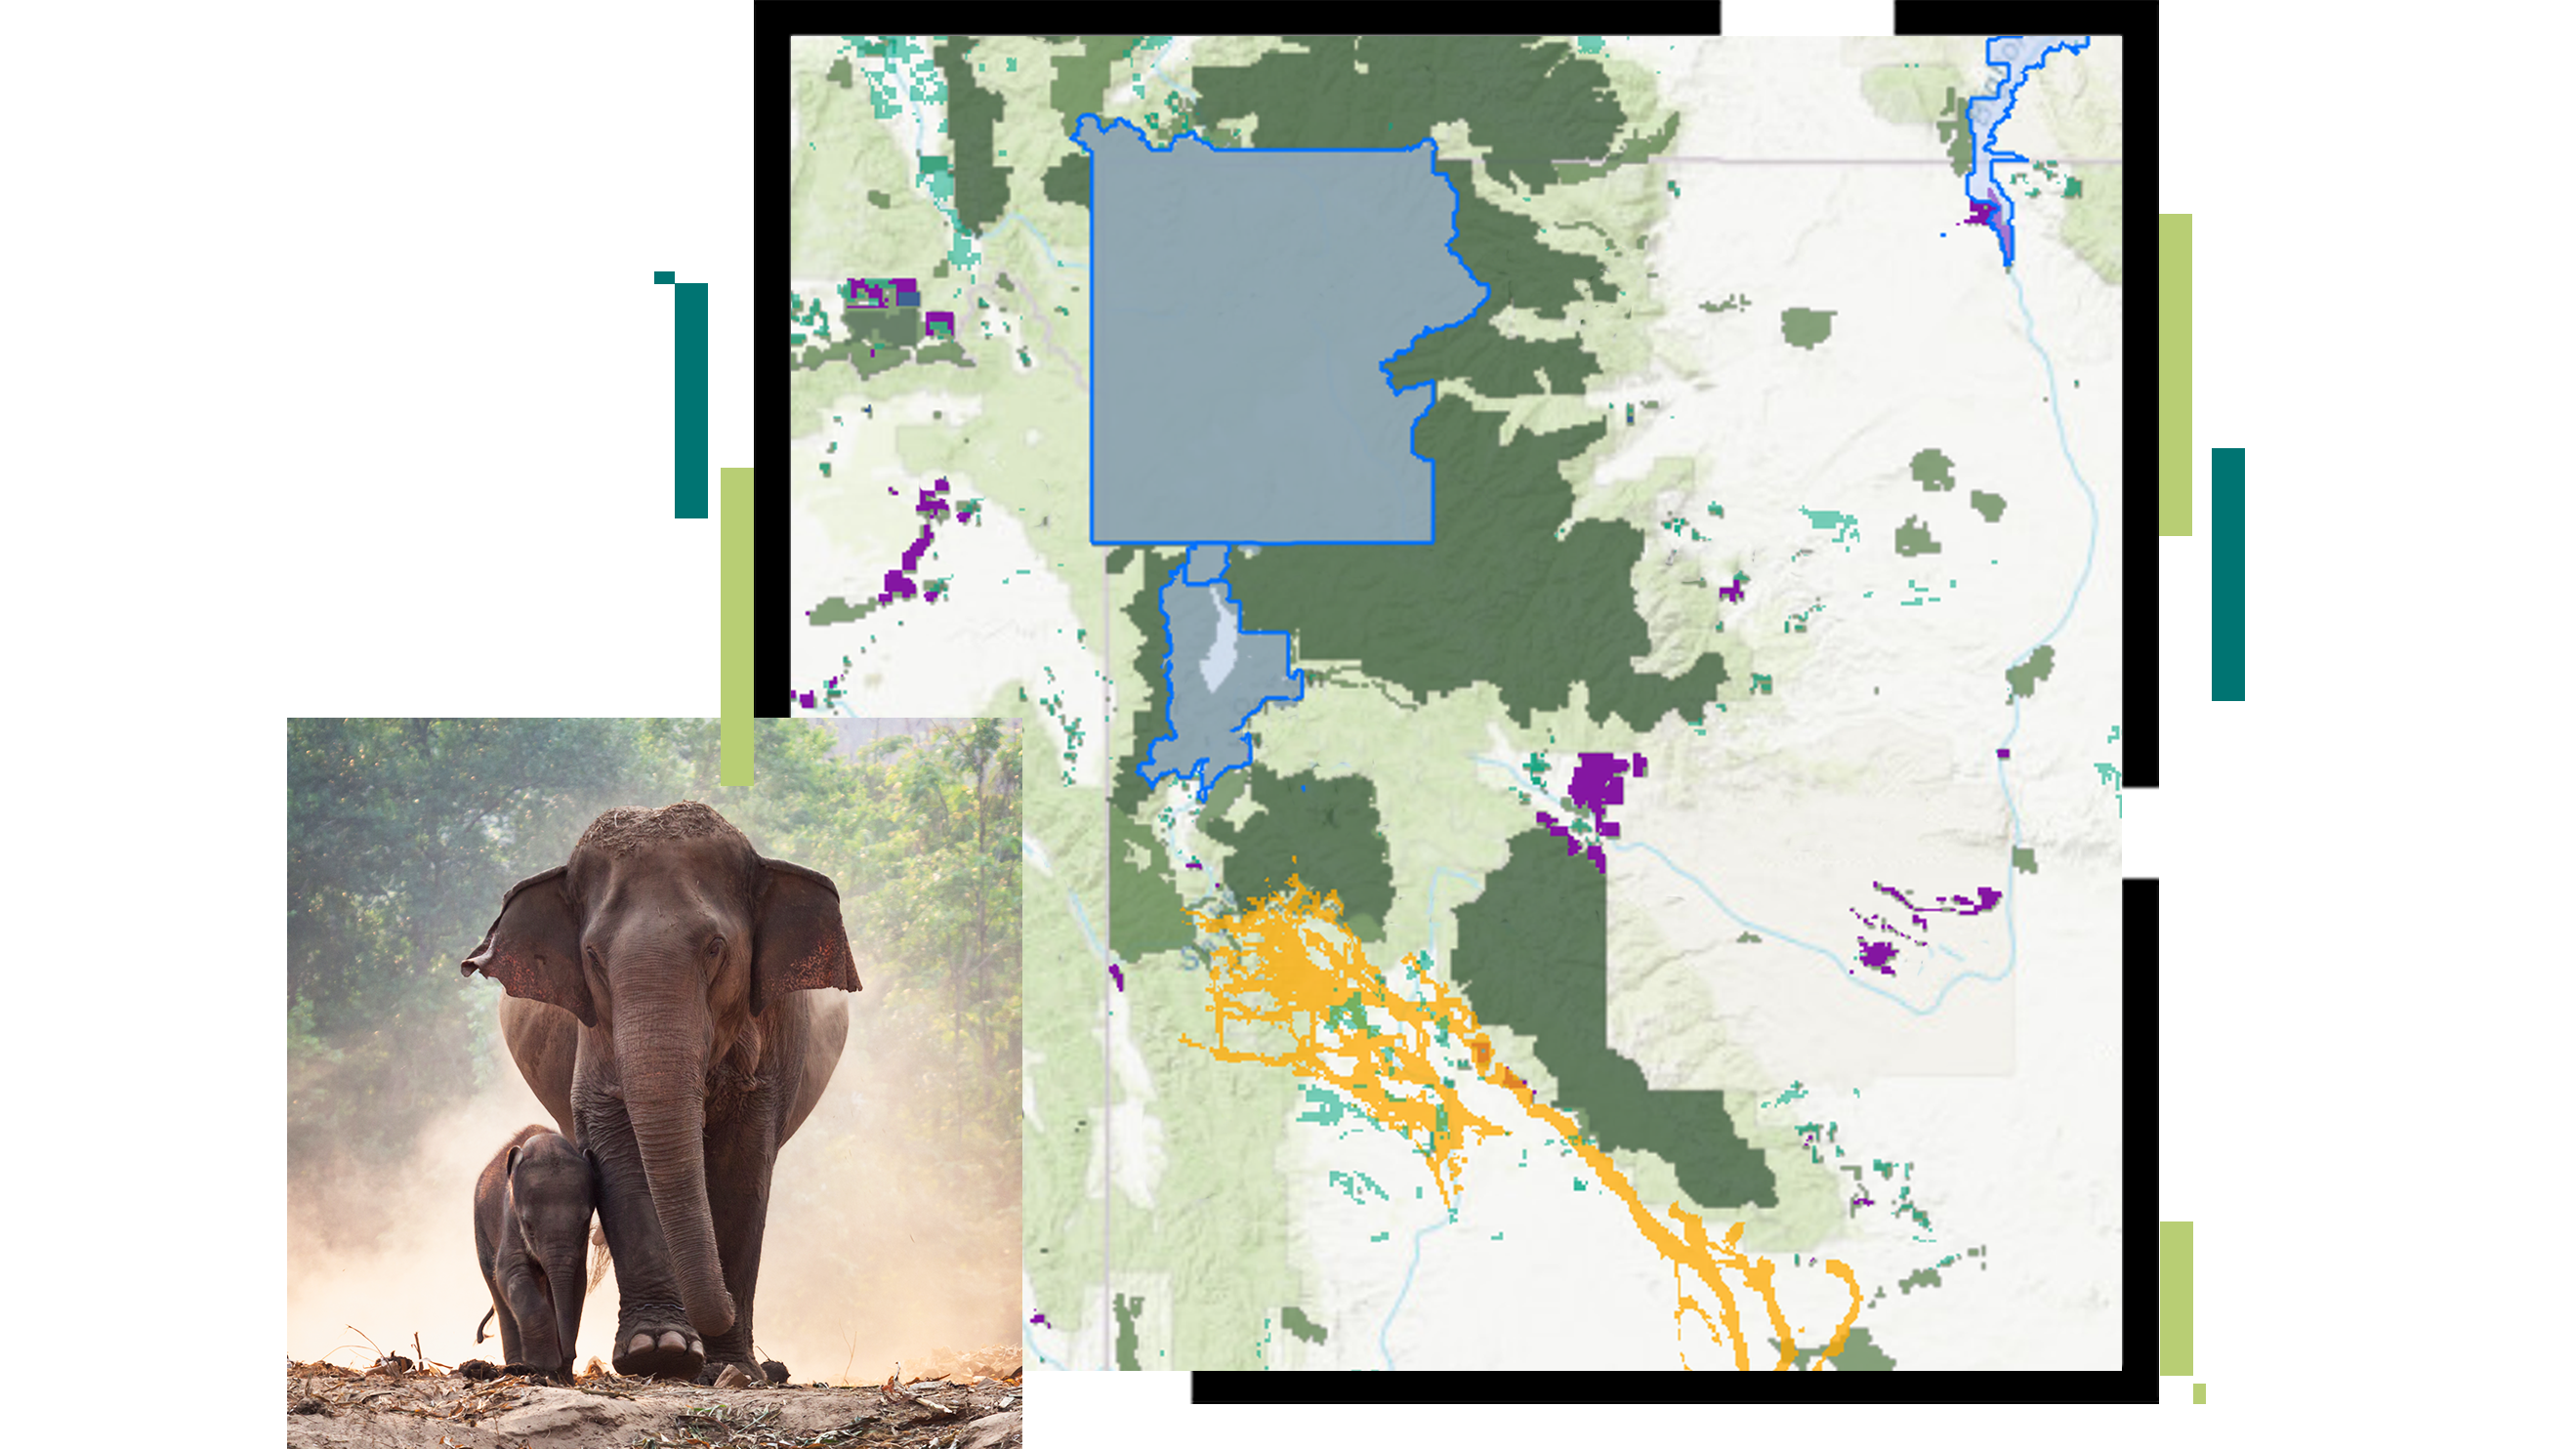 خريطة لمنطقة محمية مقترحة محددة باللون الأزرق ومغطاة بصورة فيل مع صغيره